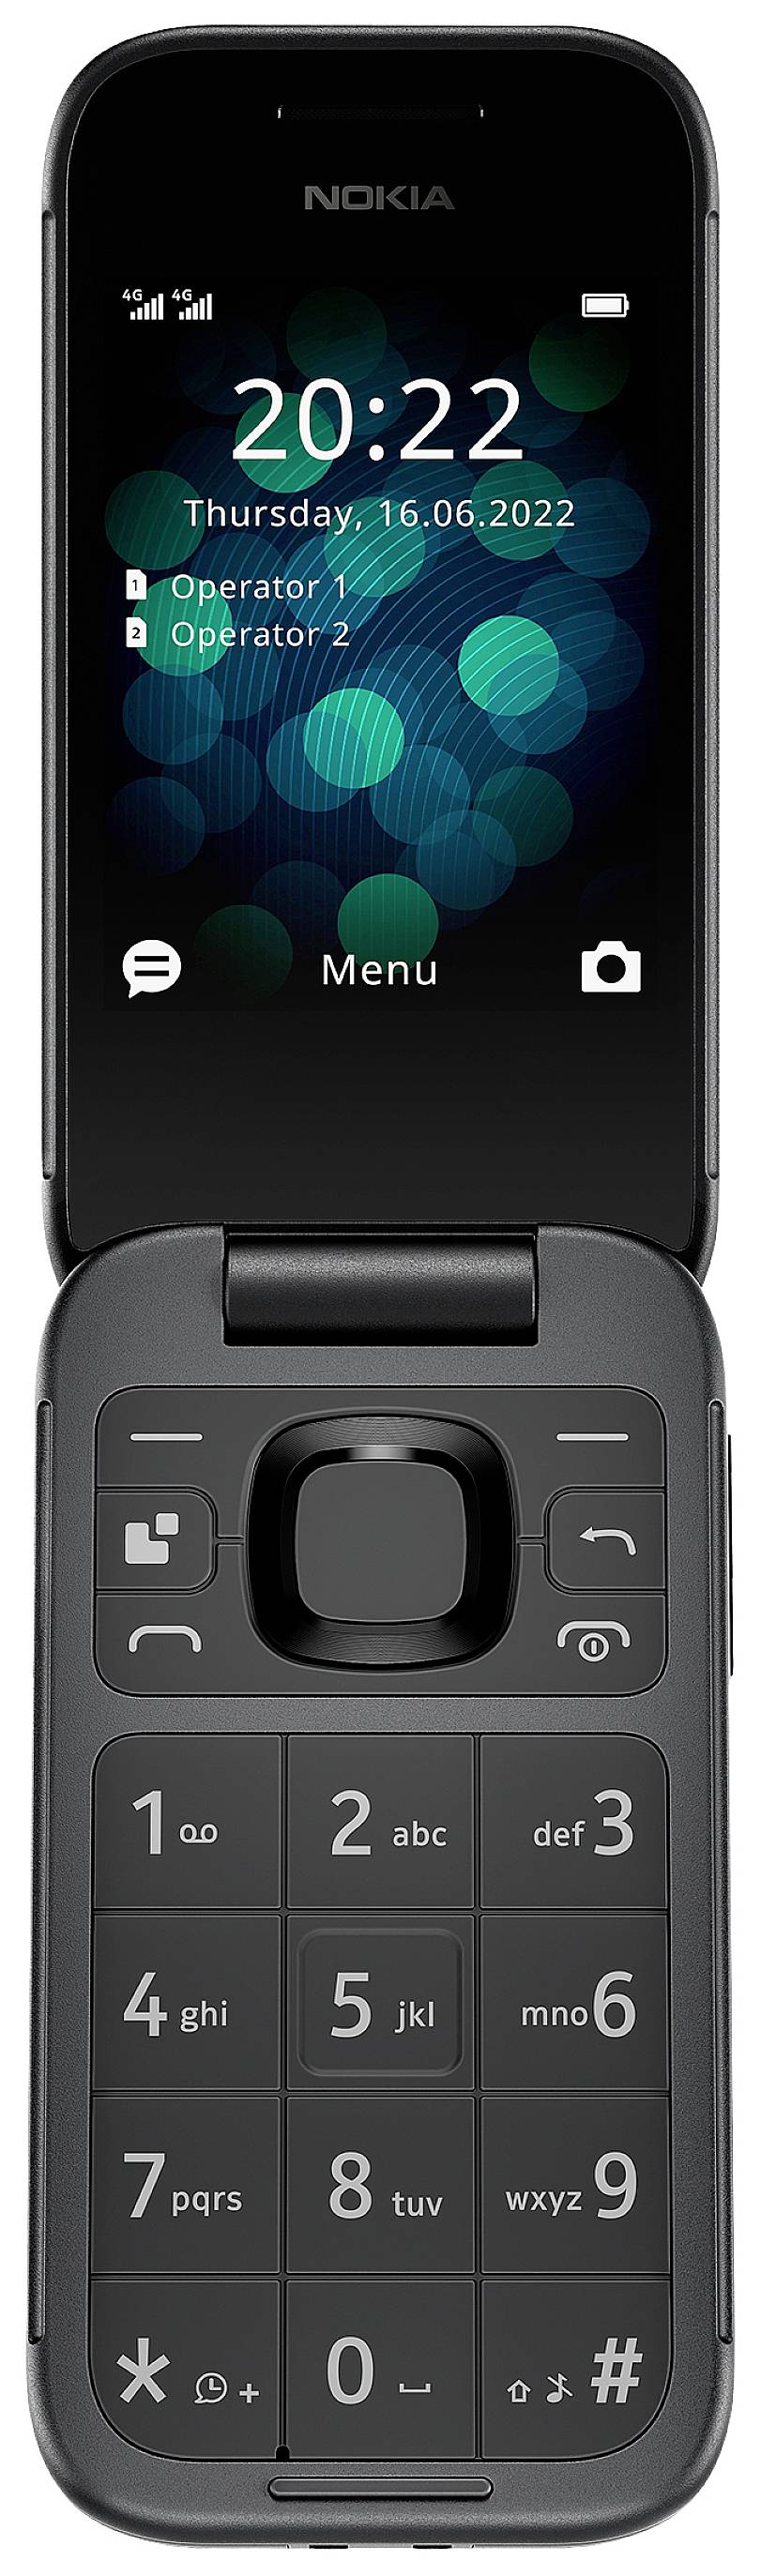 Nokia 2660 Flip Klapp-Handy Schwarz kaufen